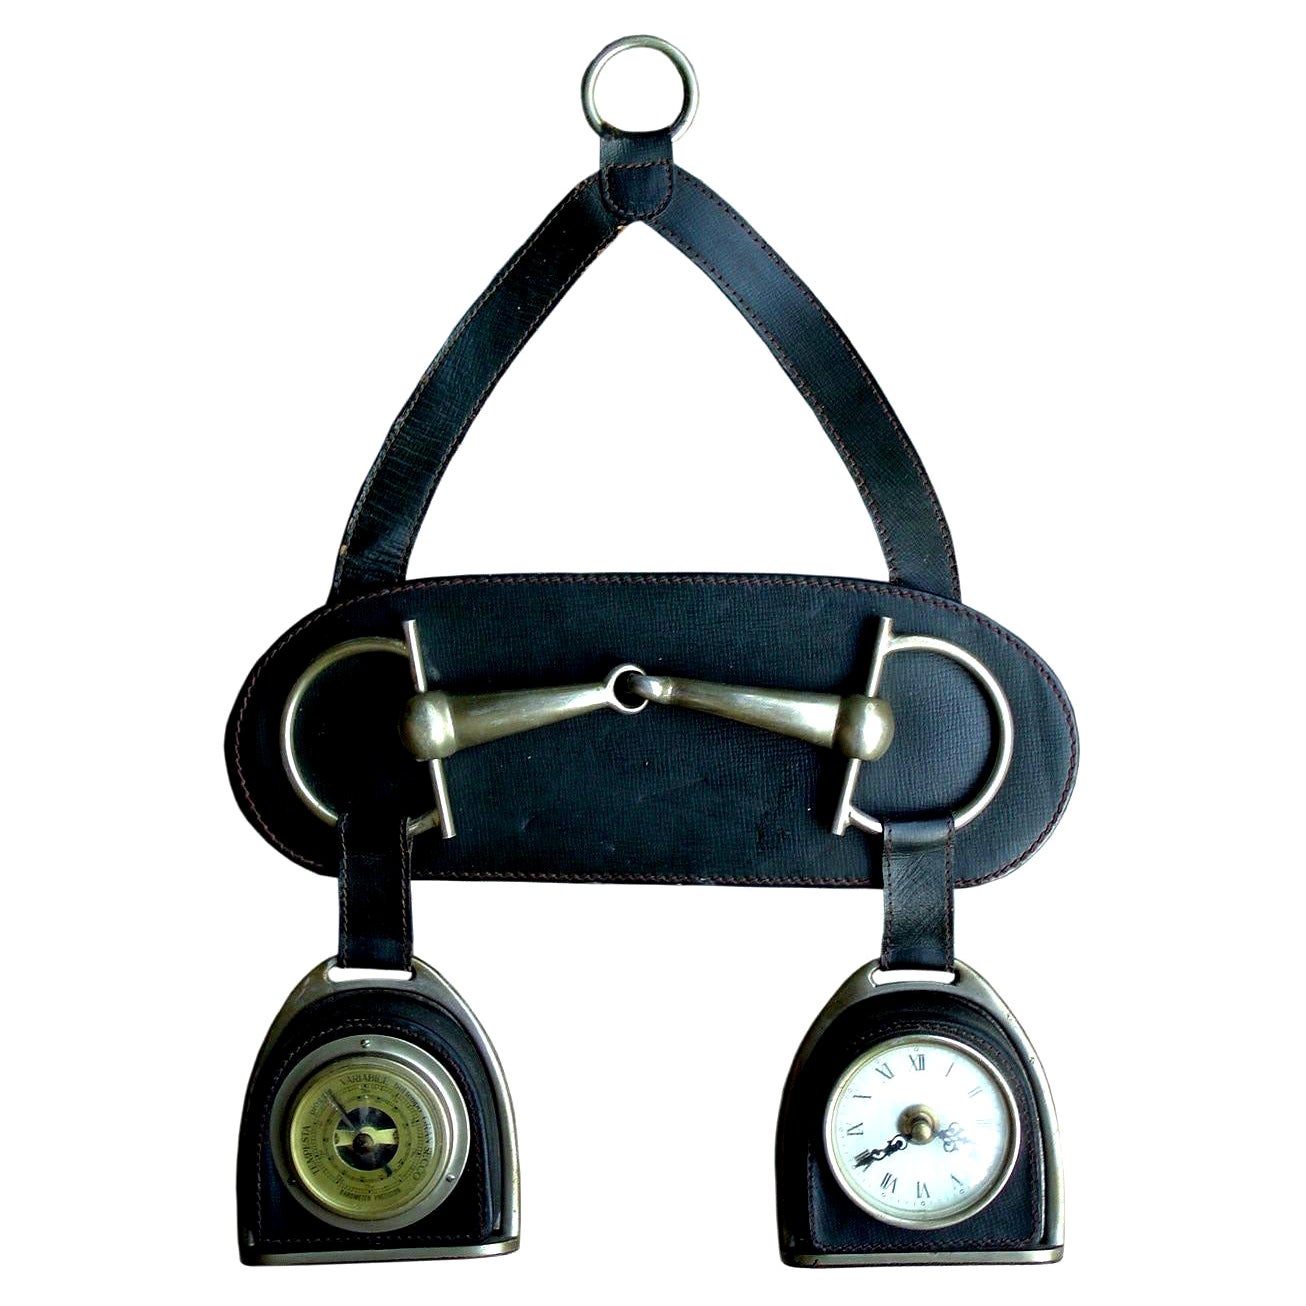 Seltenes Barometer und Uhrenjahr 1960 von Gucci, Vintage-Design